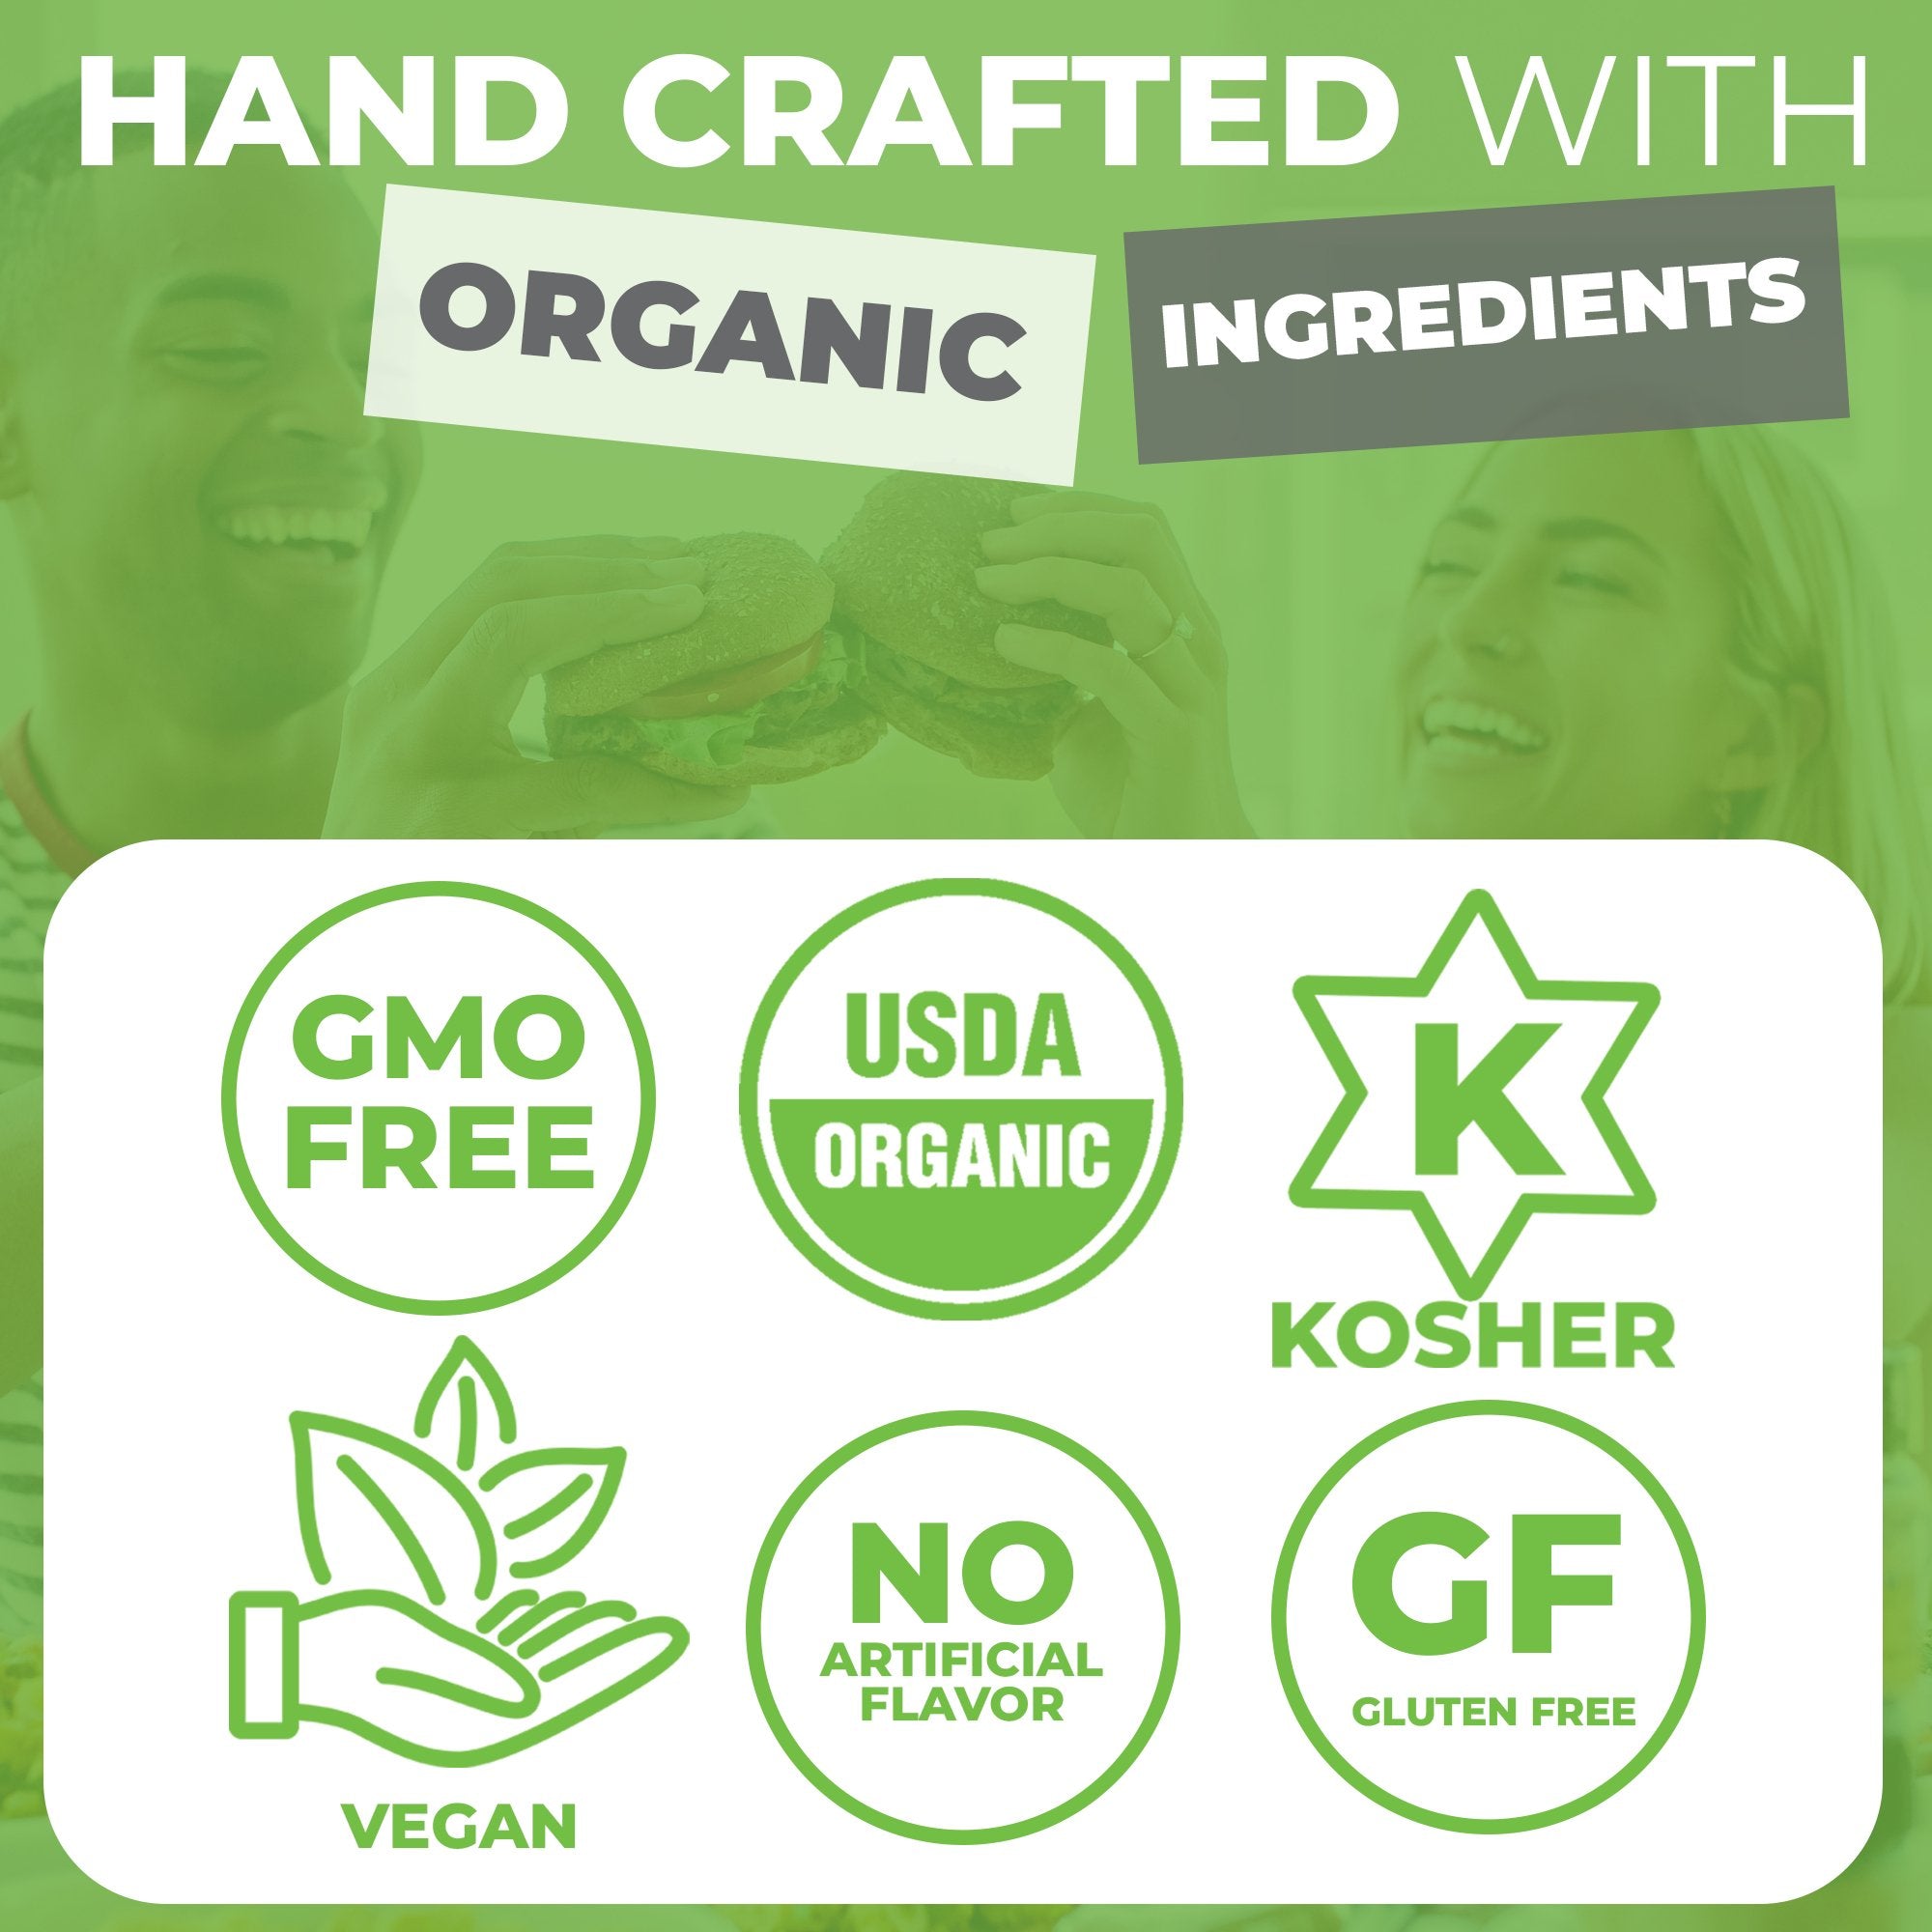 FreshJax Smoked Chili Flakes are GMO-Free, USDA Organic, Kosher, Vegan and Gluten-Free